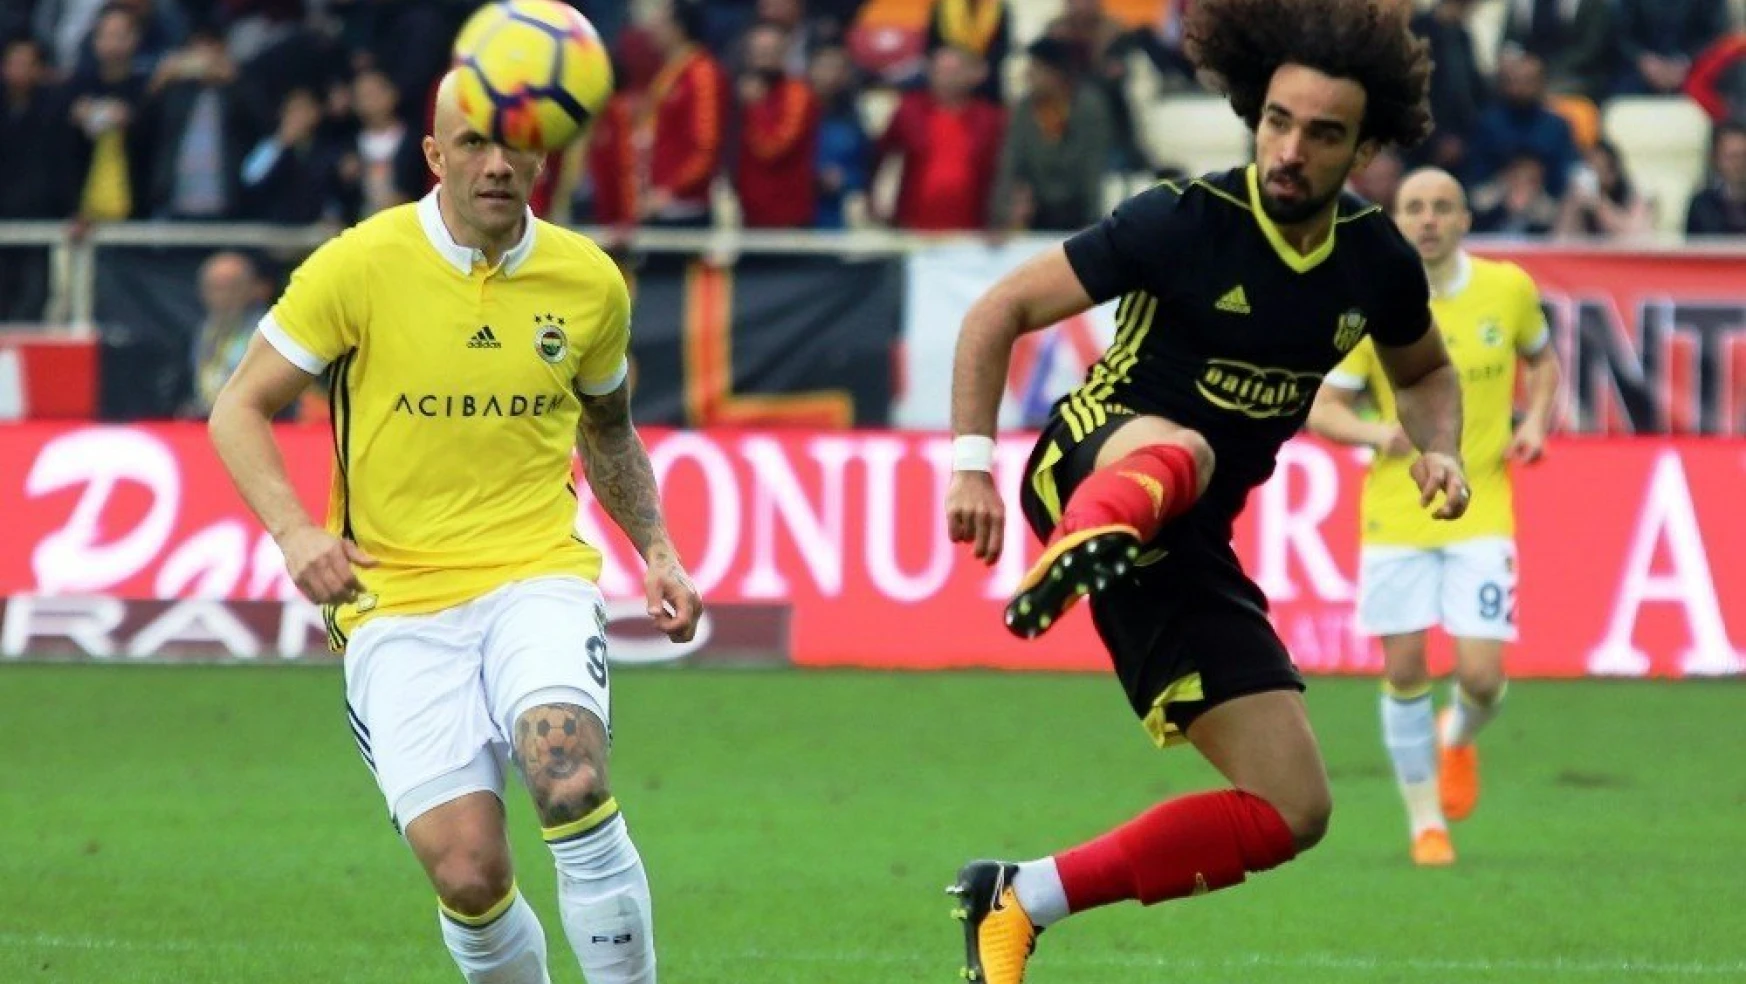 Spor Toto Süper Lig: Evkur Yeni Malatyaspor: 0 - Fenerbahçe: 2 (Maç sonucu)
